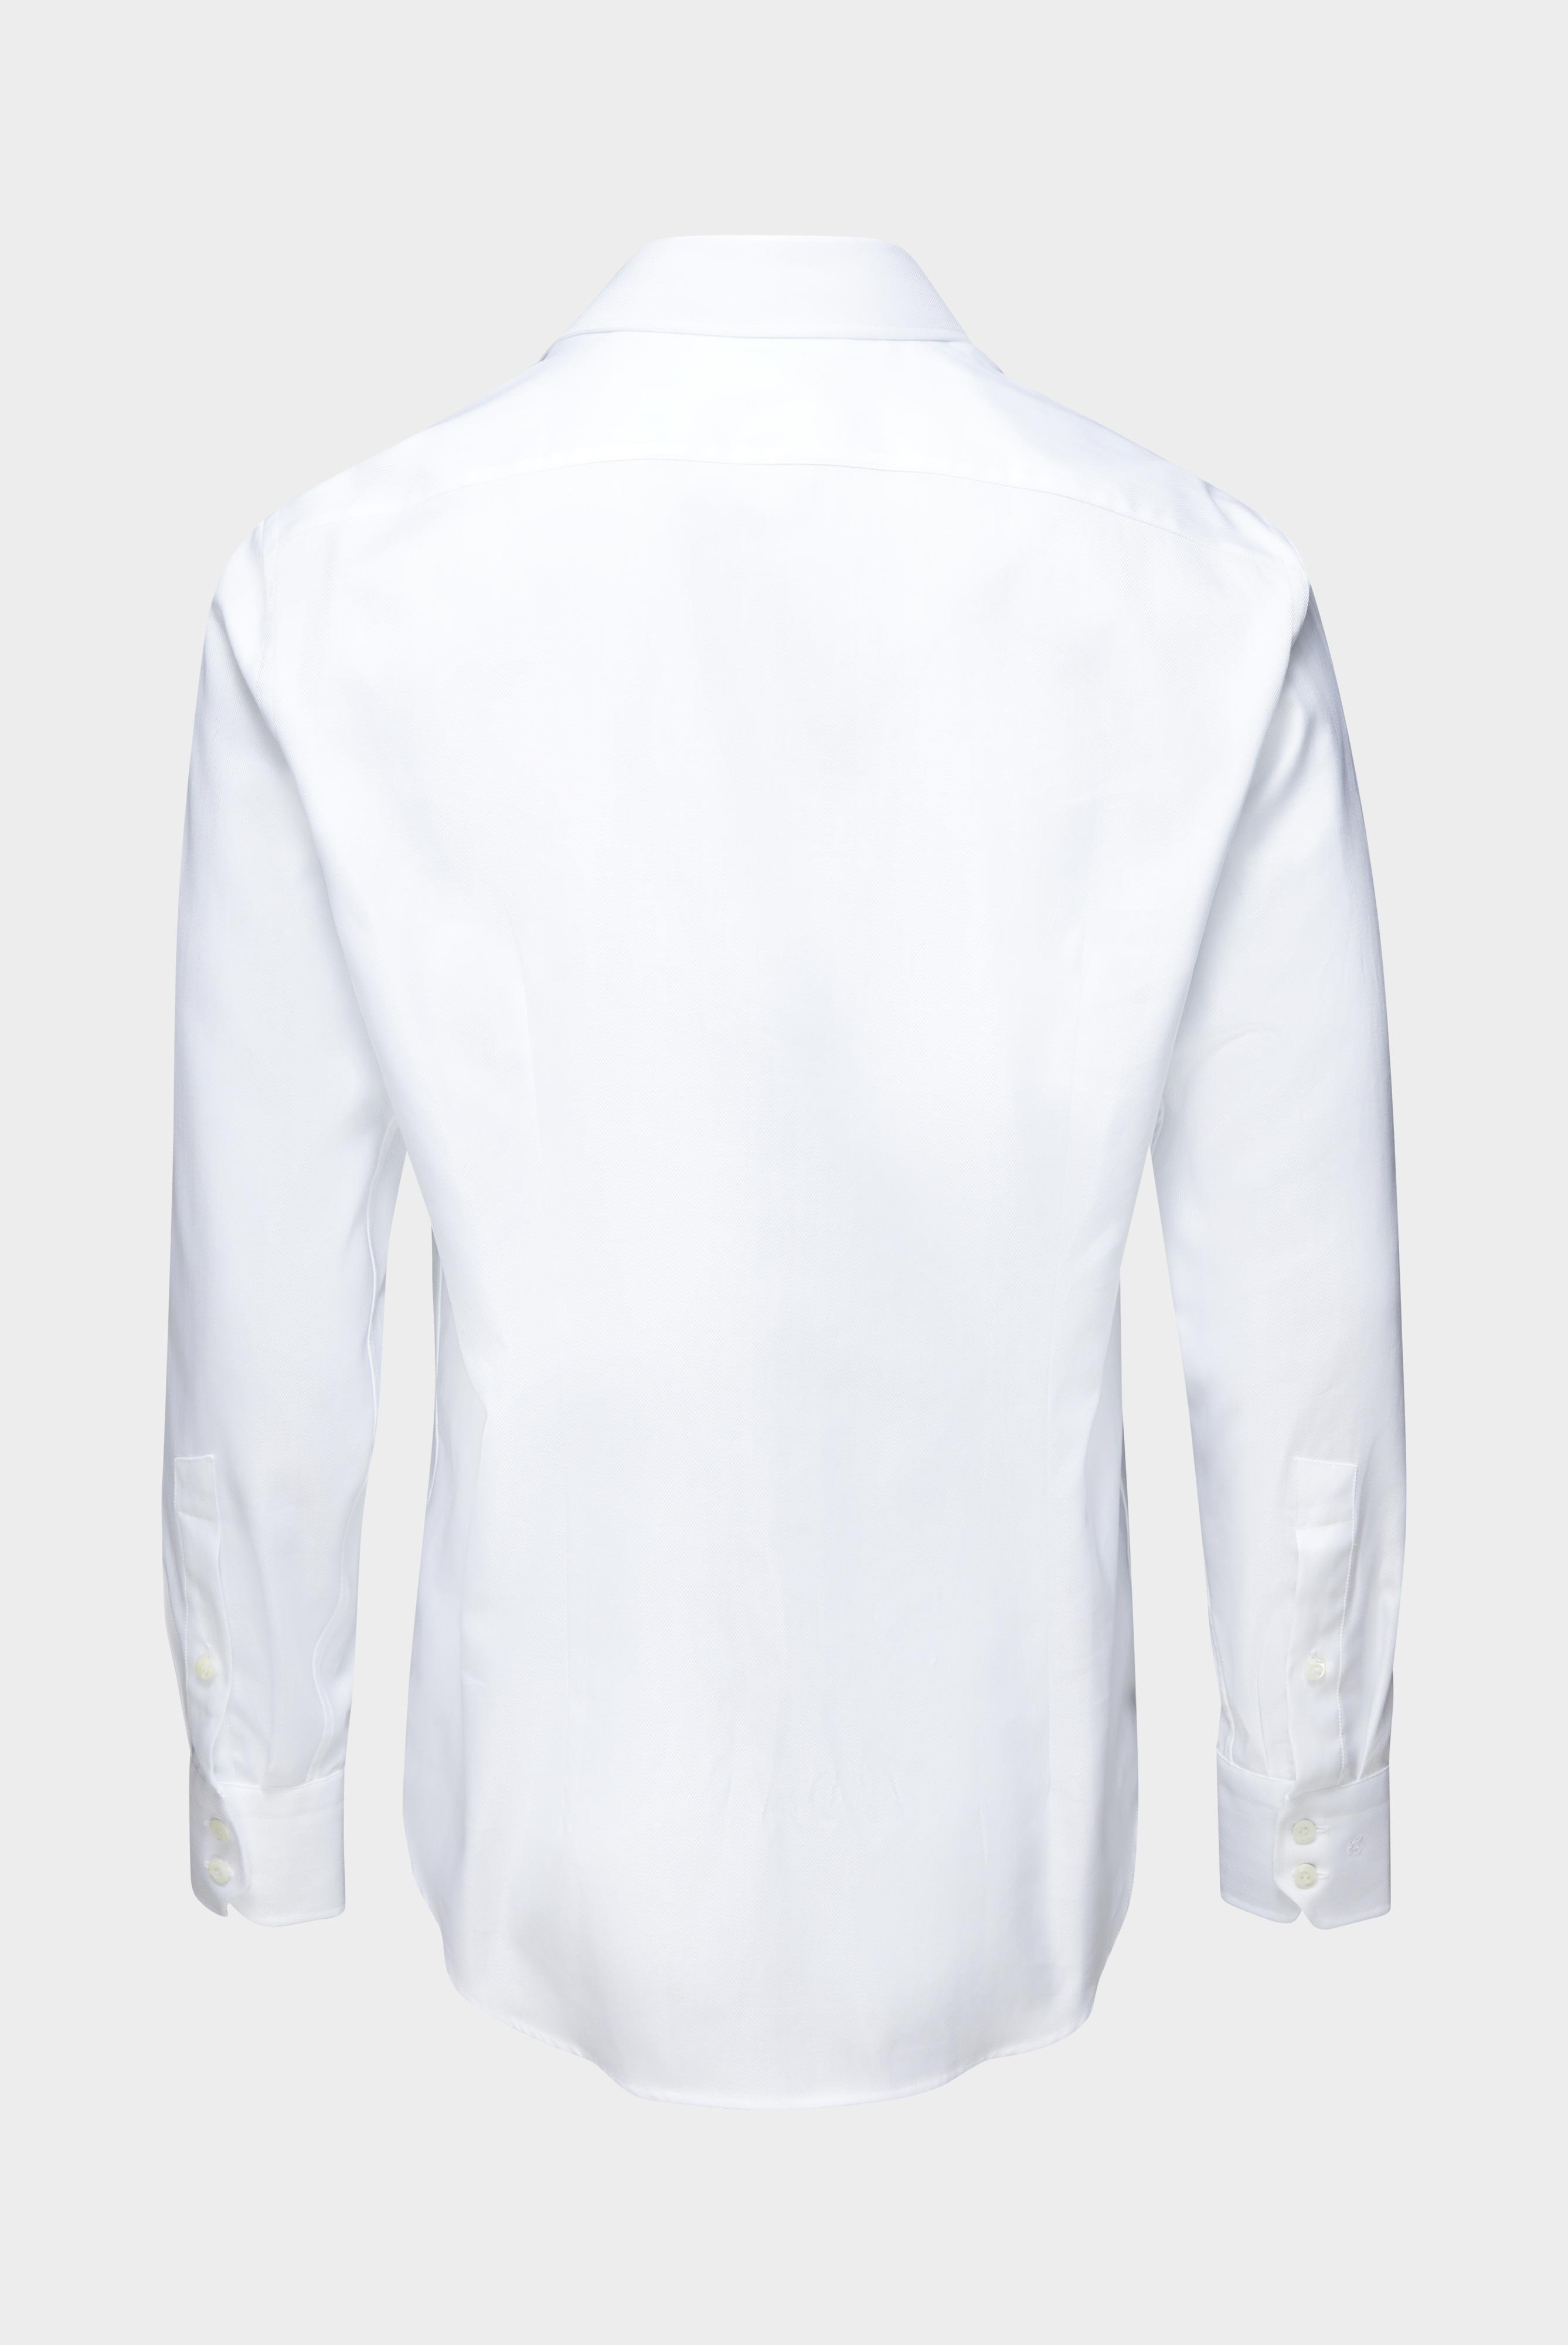 Business Hemden+Twill Hemd mit Fischgrat Tailor Fit+20.2020.AV.102501.000.41